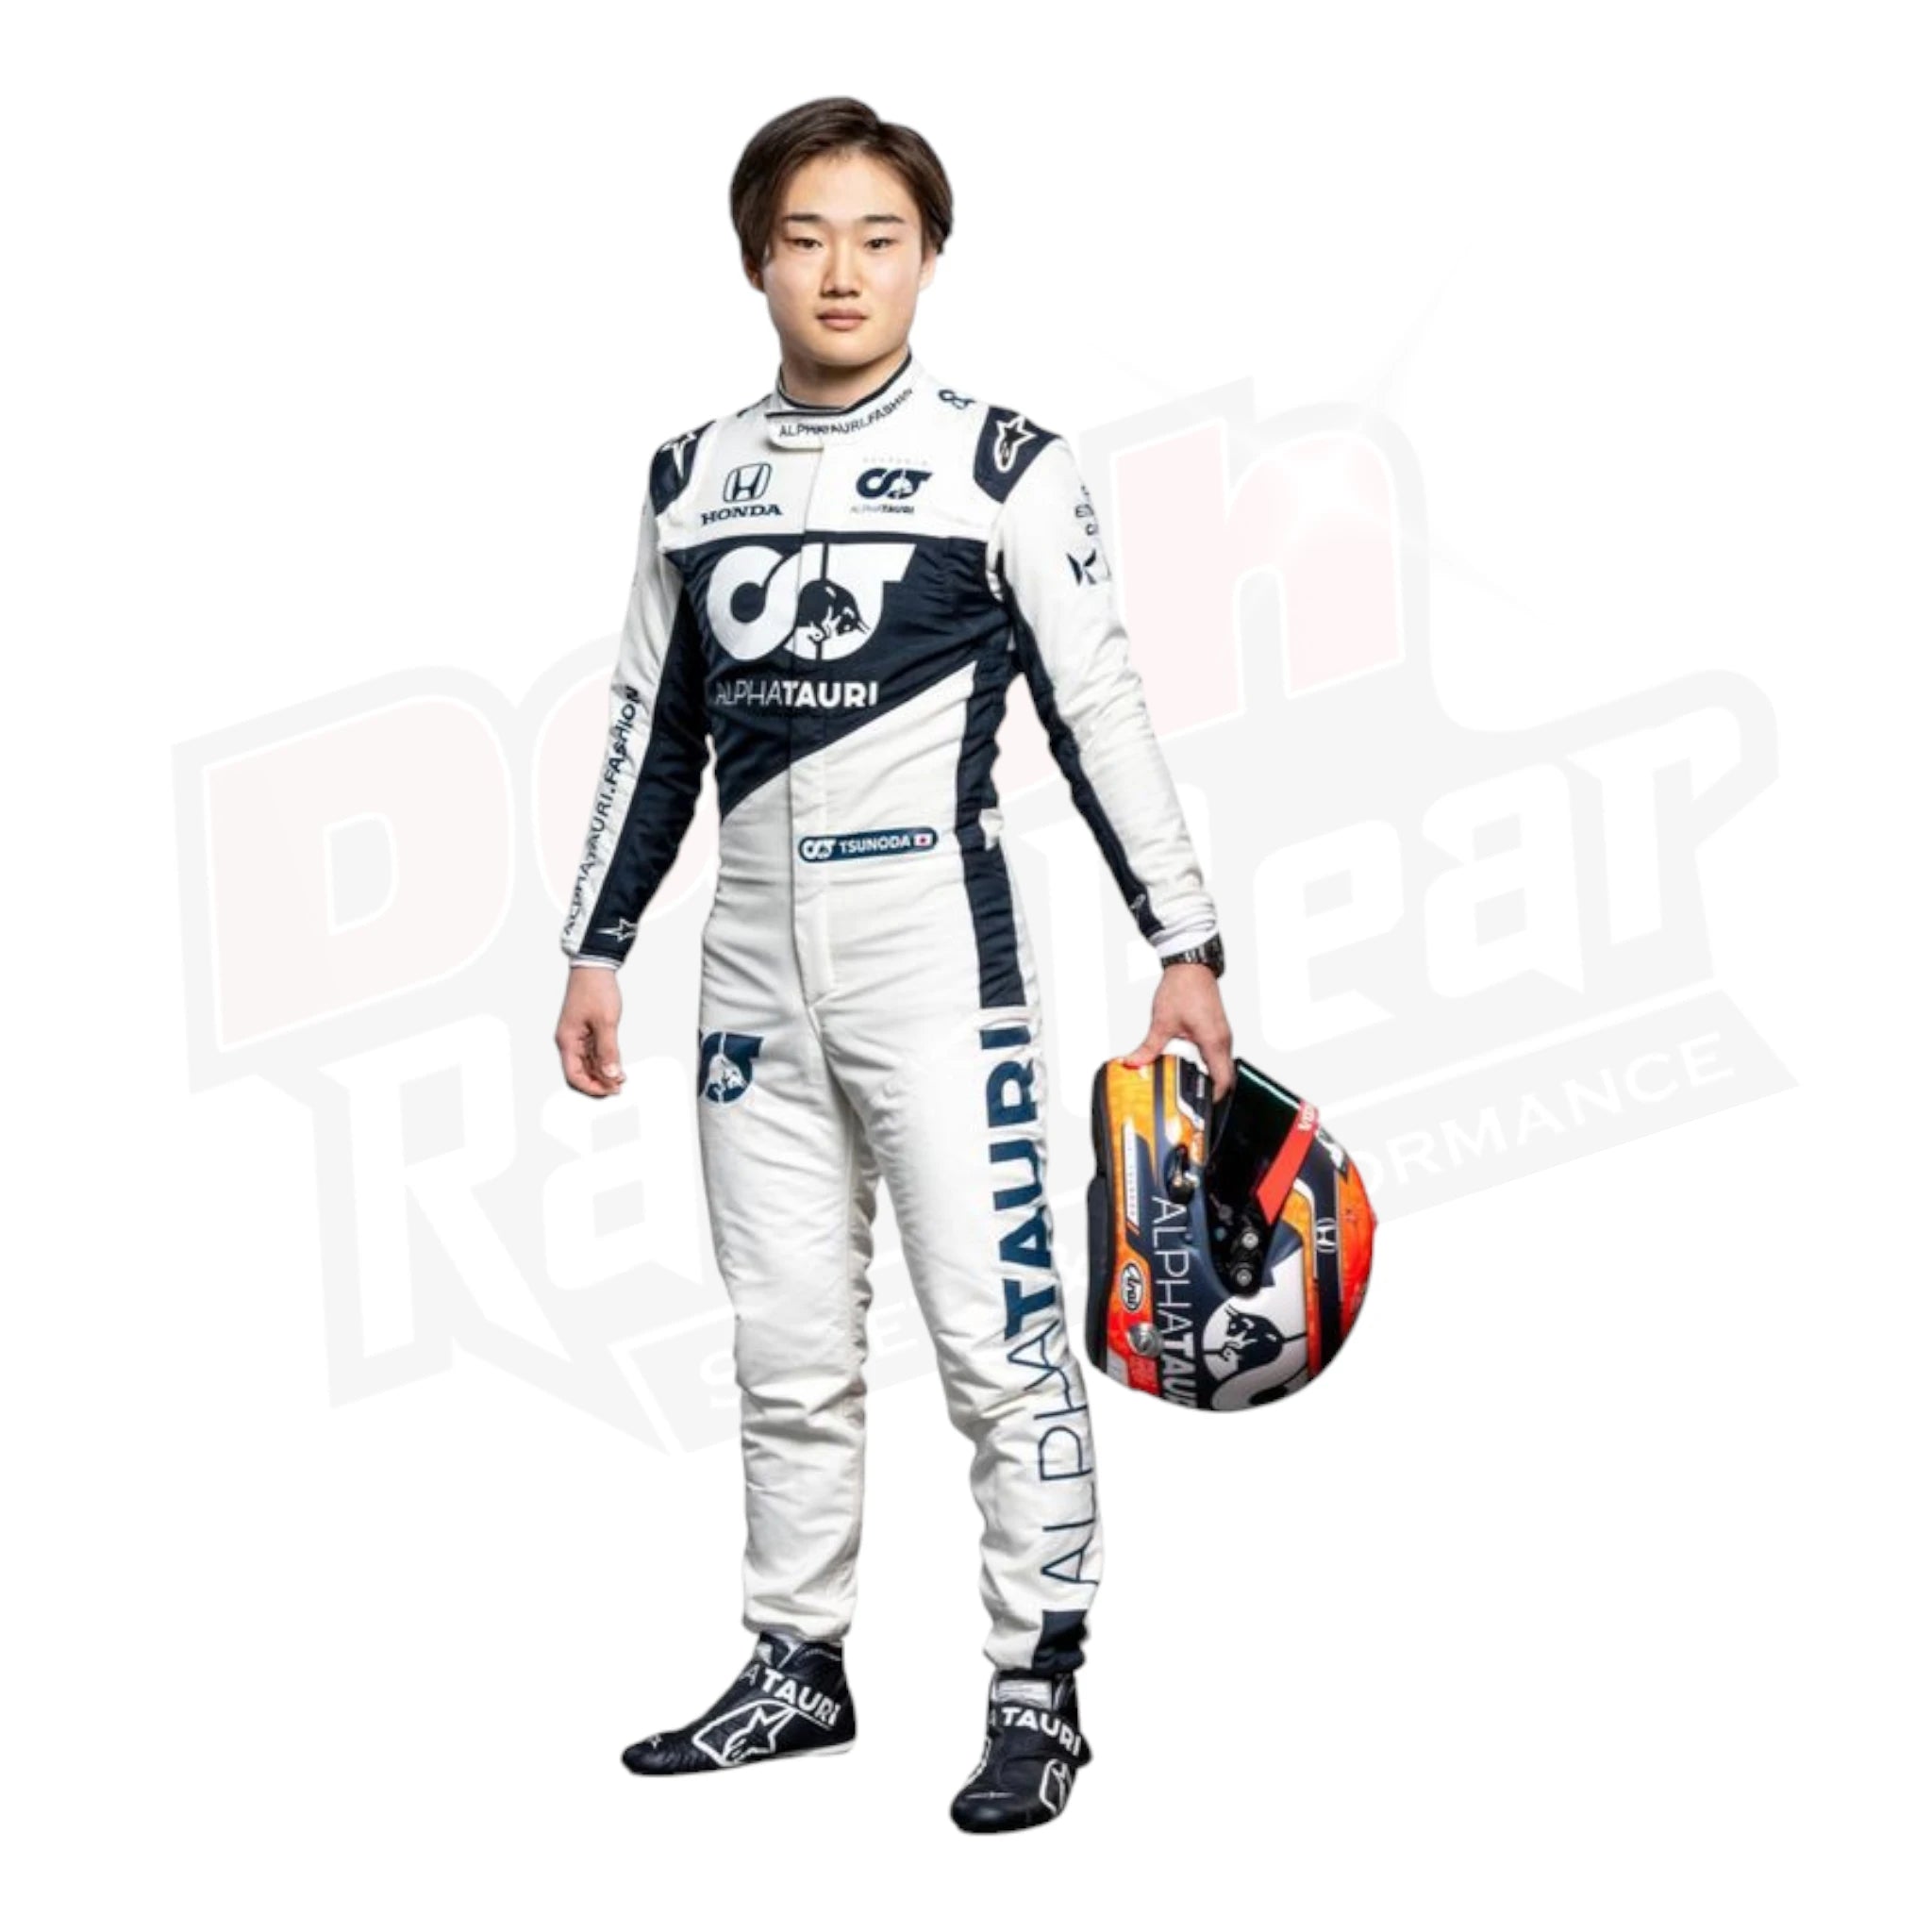 2020 Yuki Tsunoda AlphaTauri F1 Race  Suit